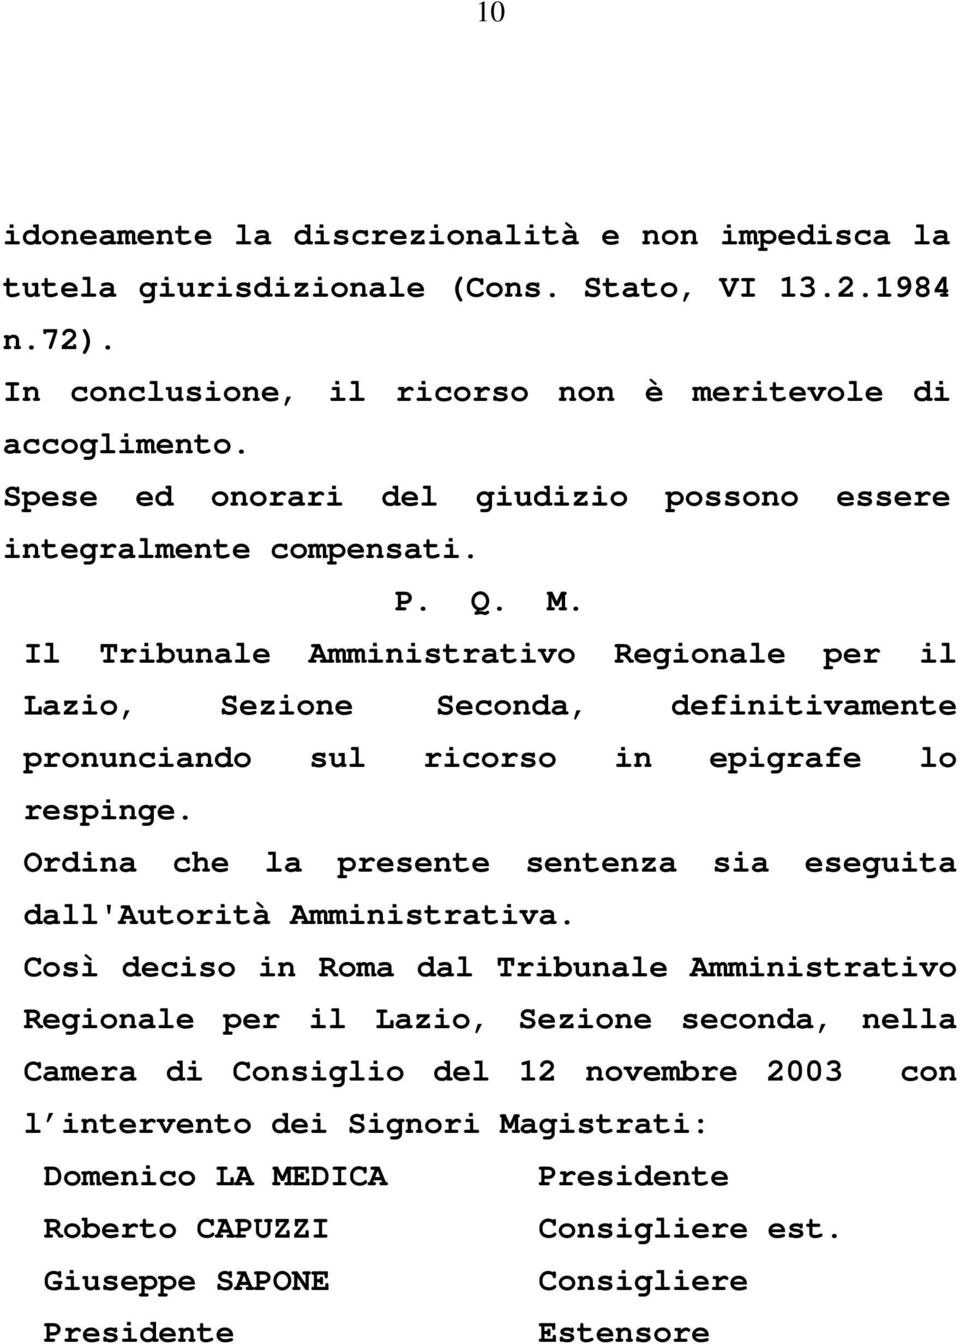 Il Tribunale Amministrativo Regionale per il Lazio, Sezione Seconda, definitivamente pronunciando sul ricorso in epigrafe lo respinge.